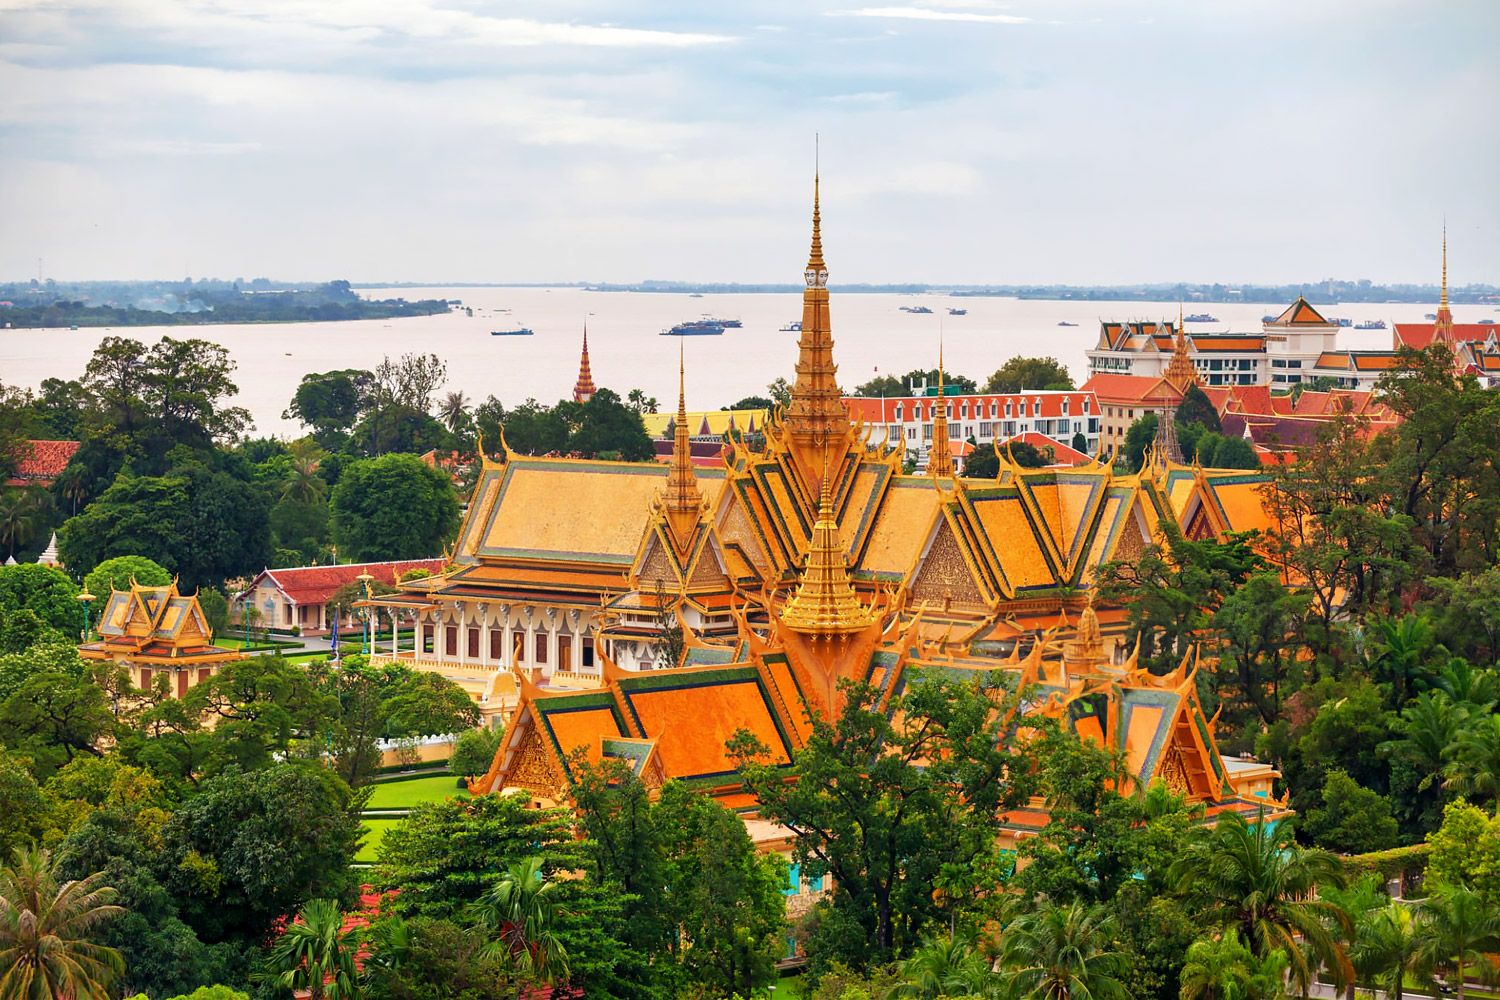 Royal-Palace-Phnom-Penh